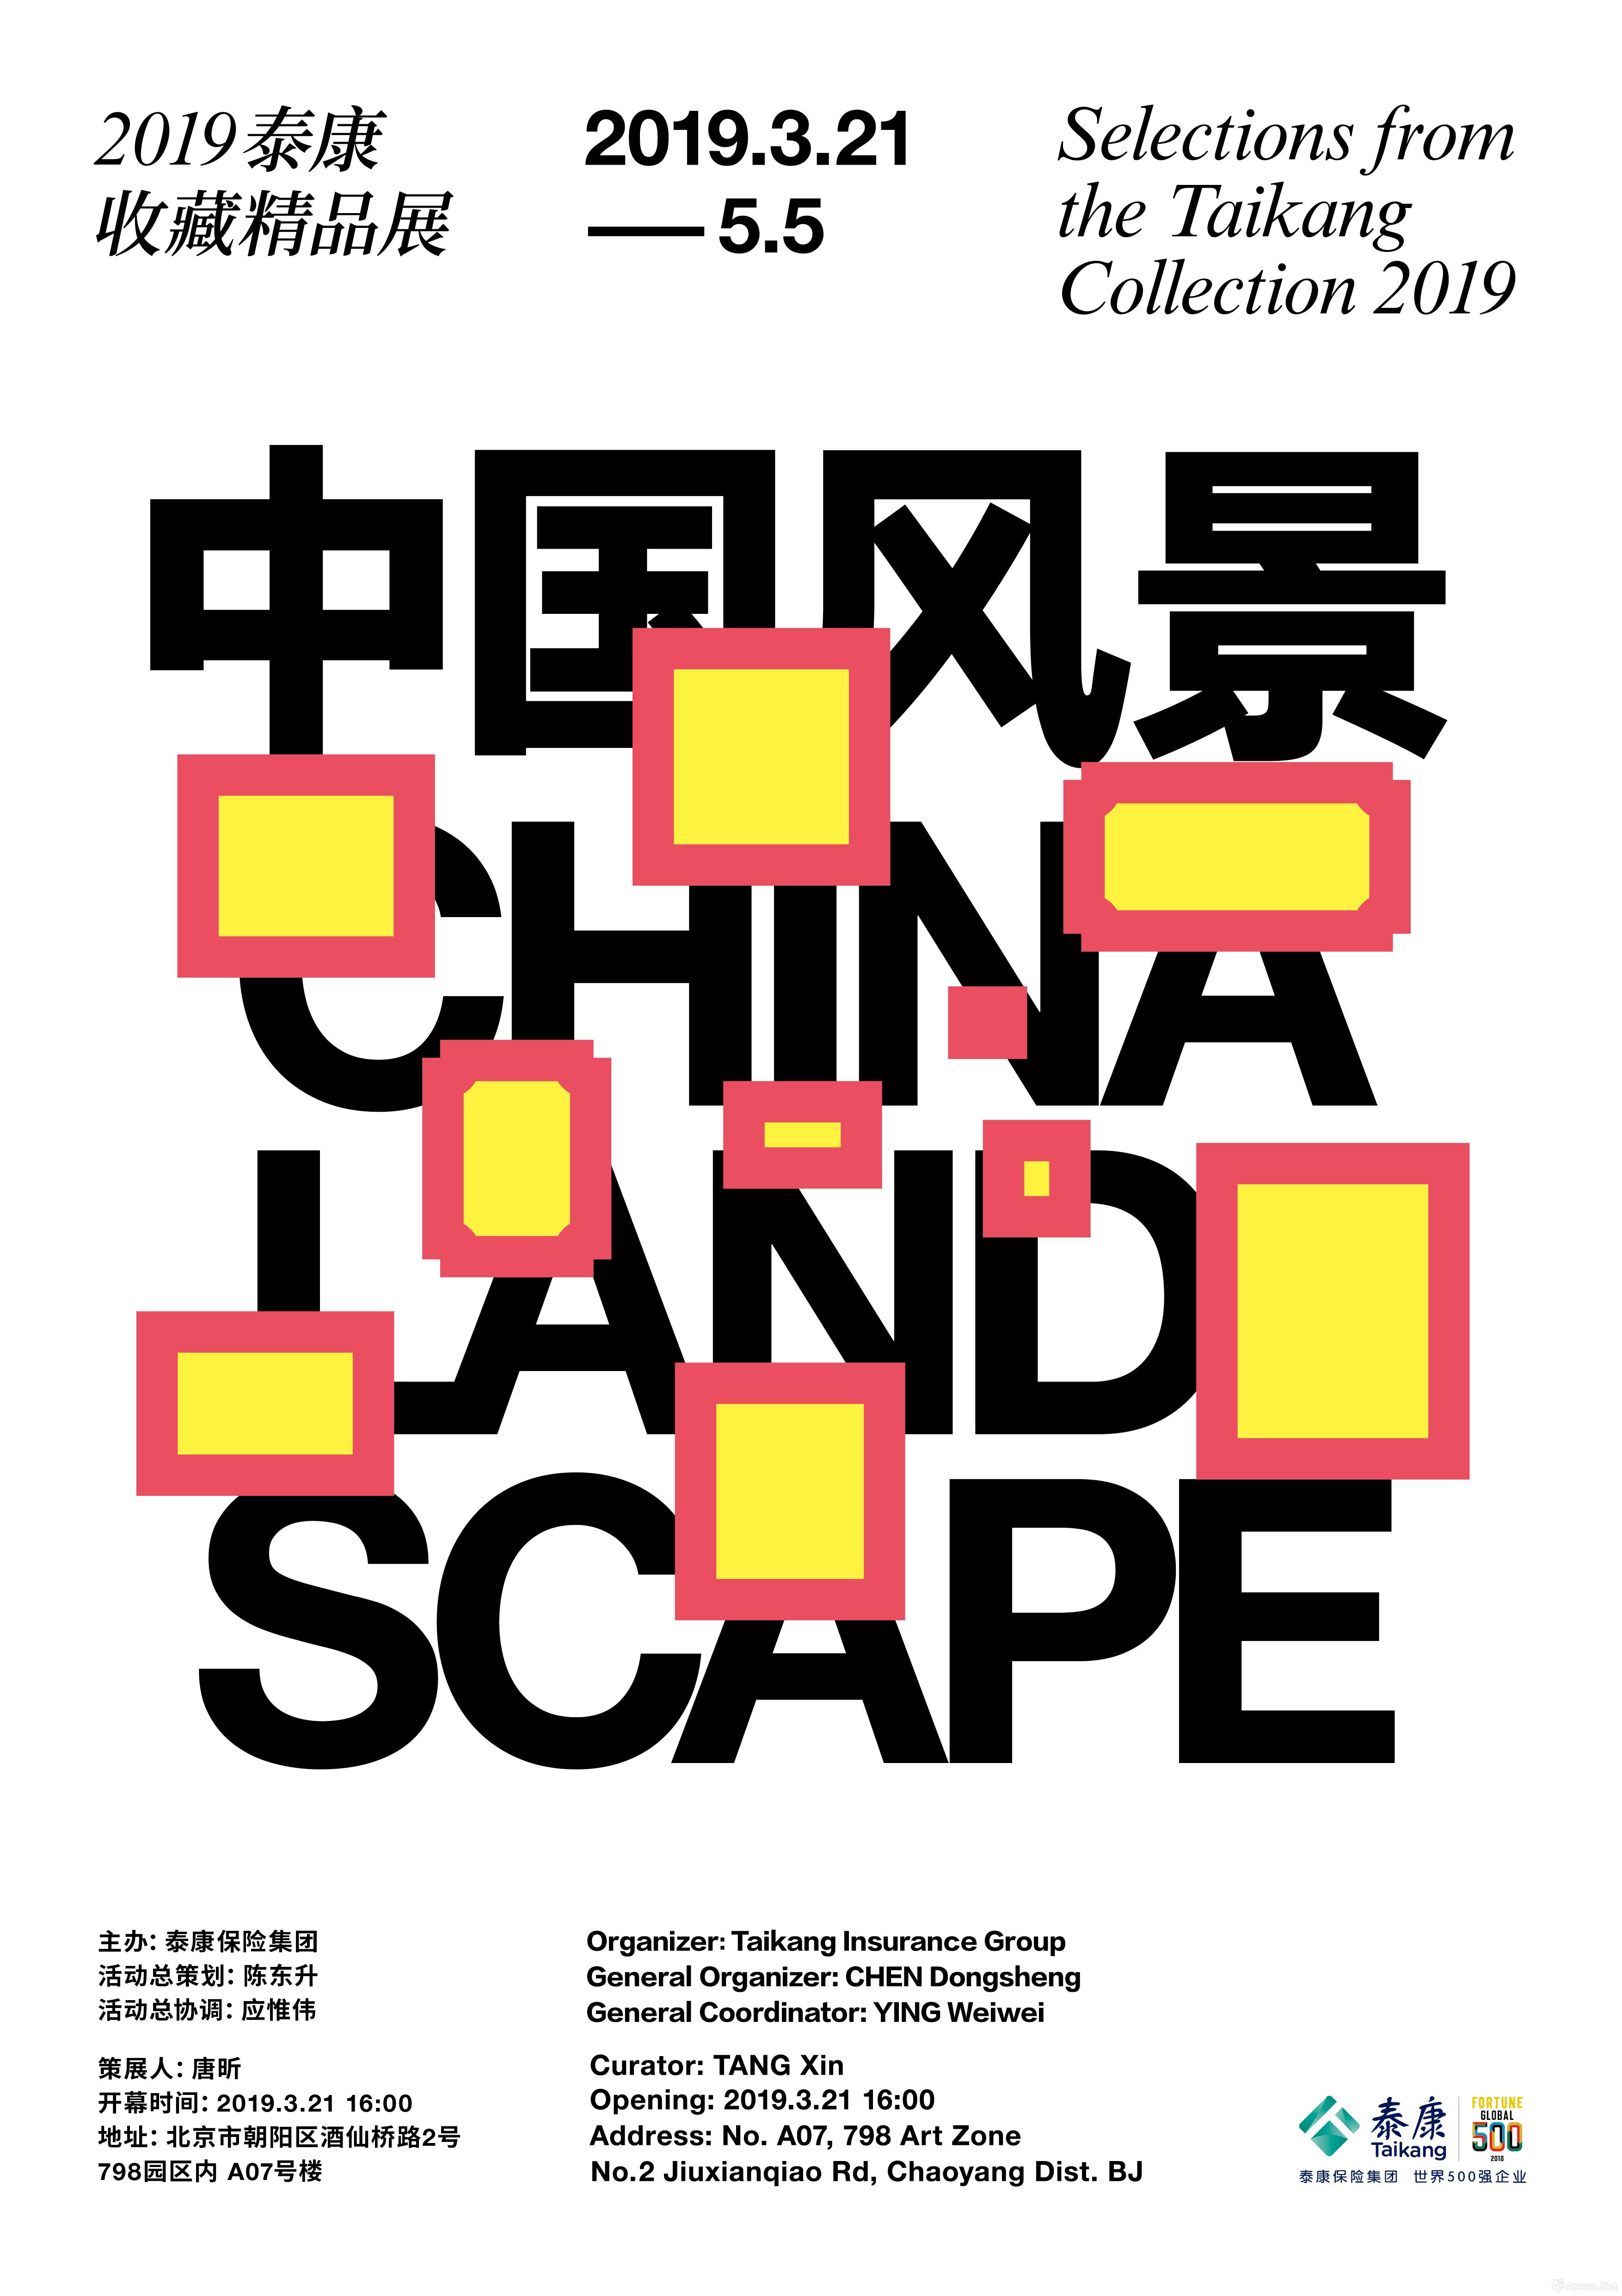 中国风景：2019泰康收藏精品展